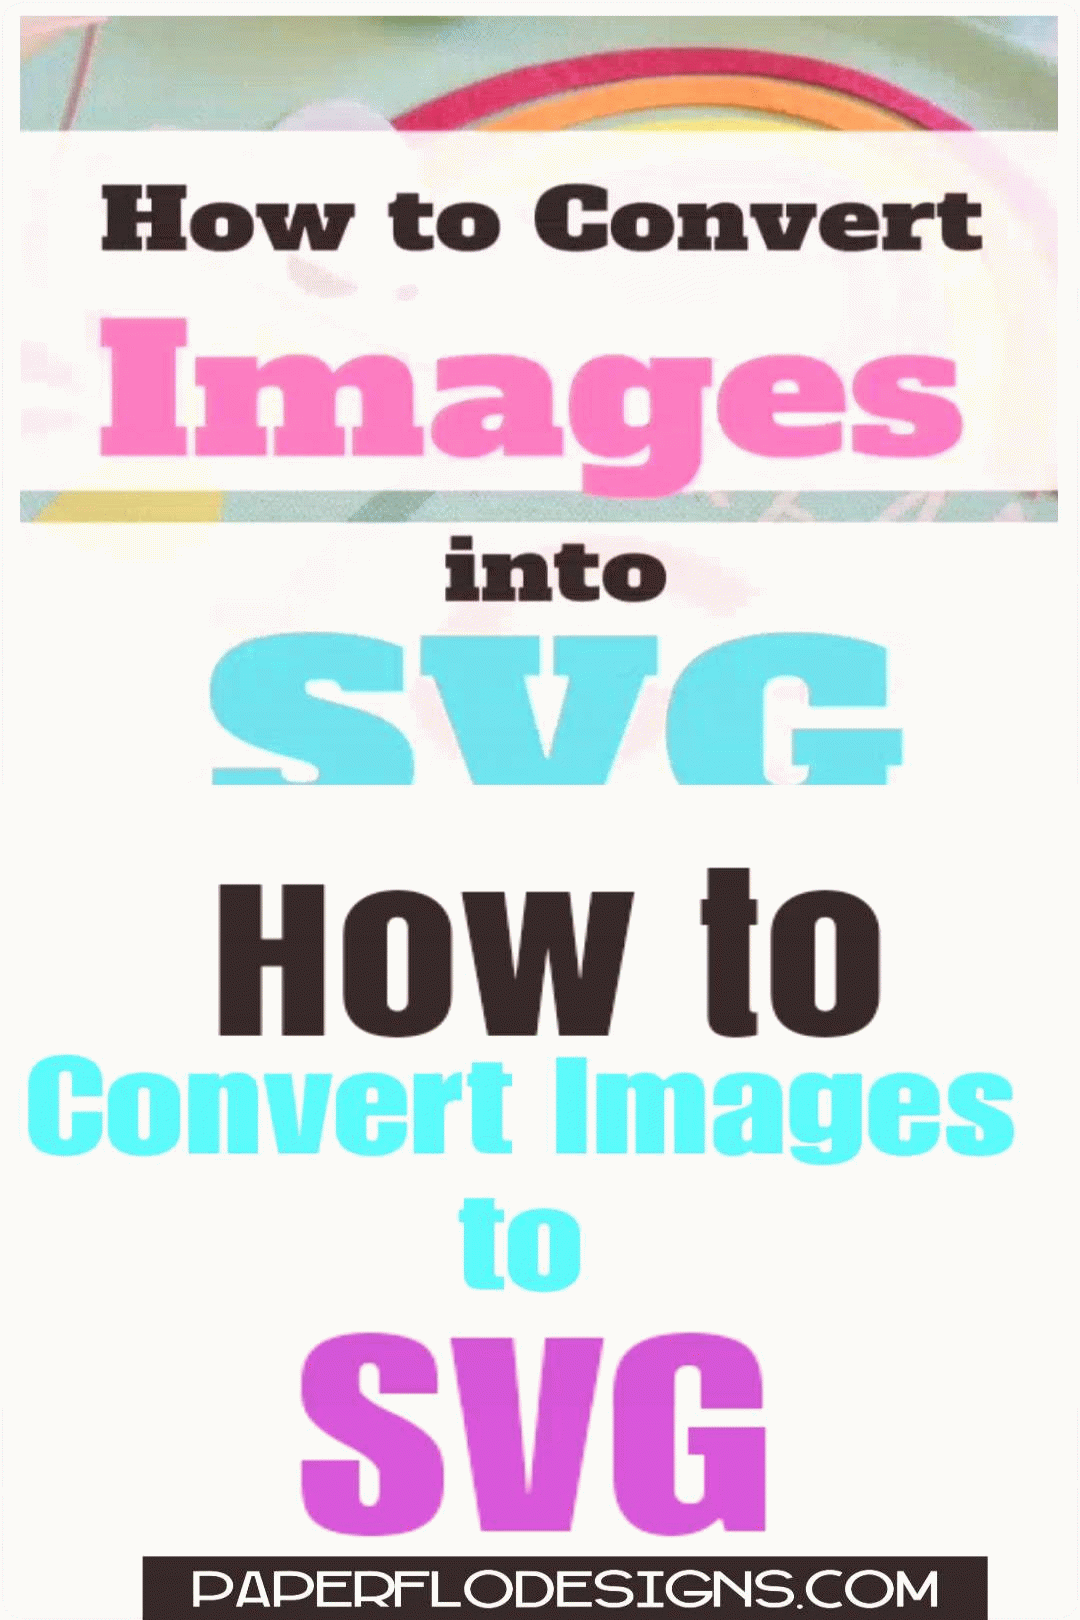 Puoi convertire le immagini in Svg?